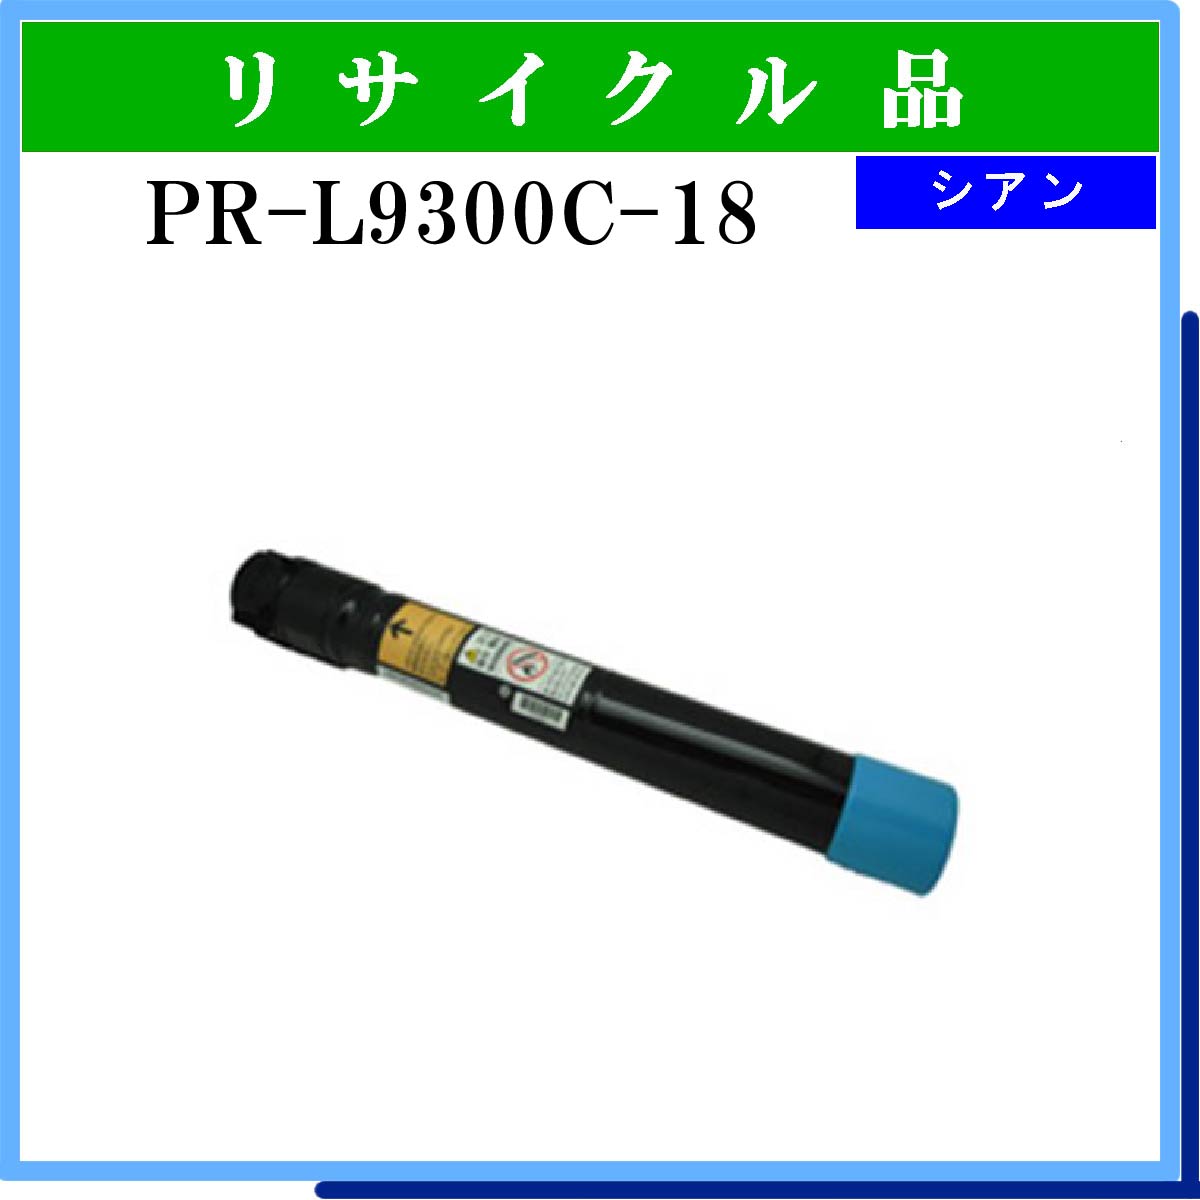 PR-L9300C-18